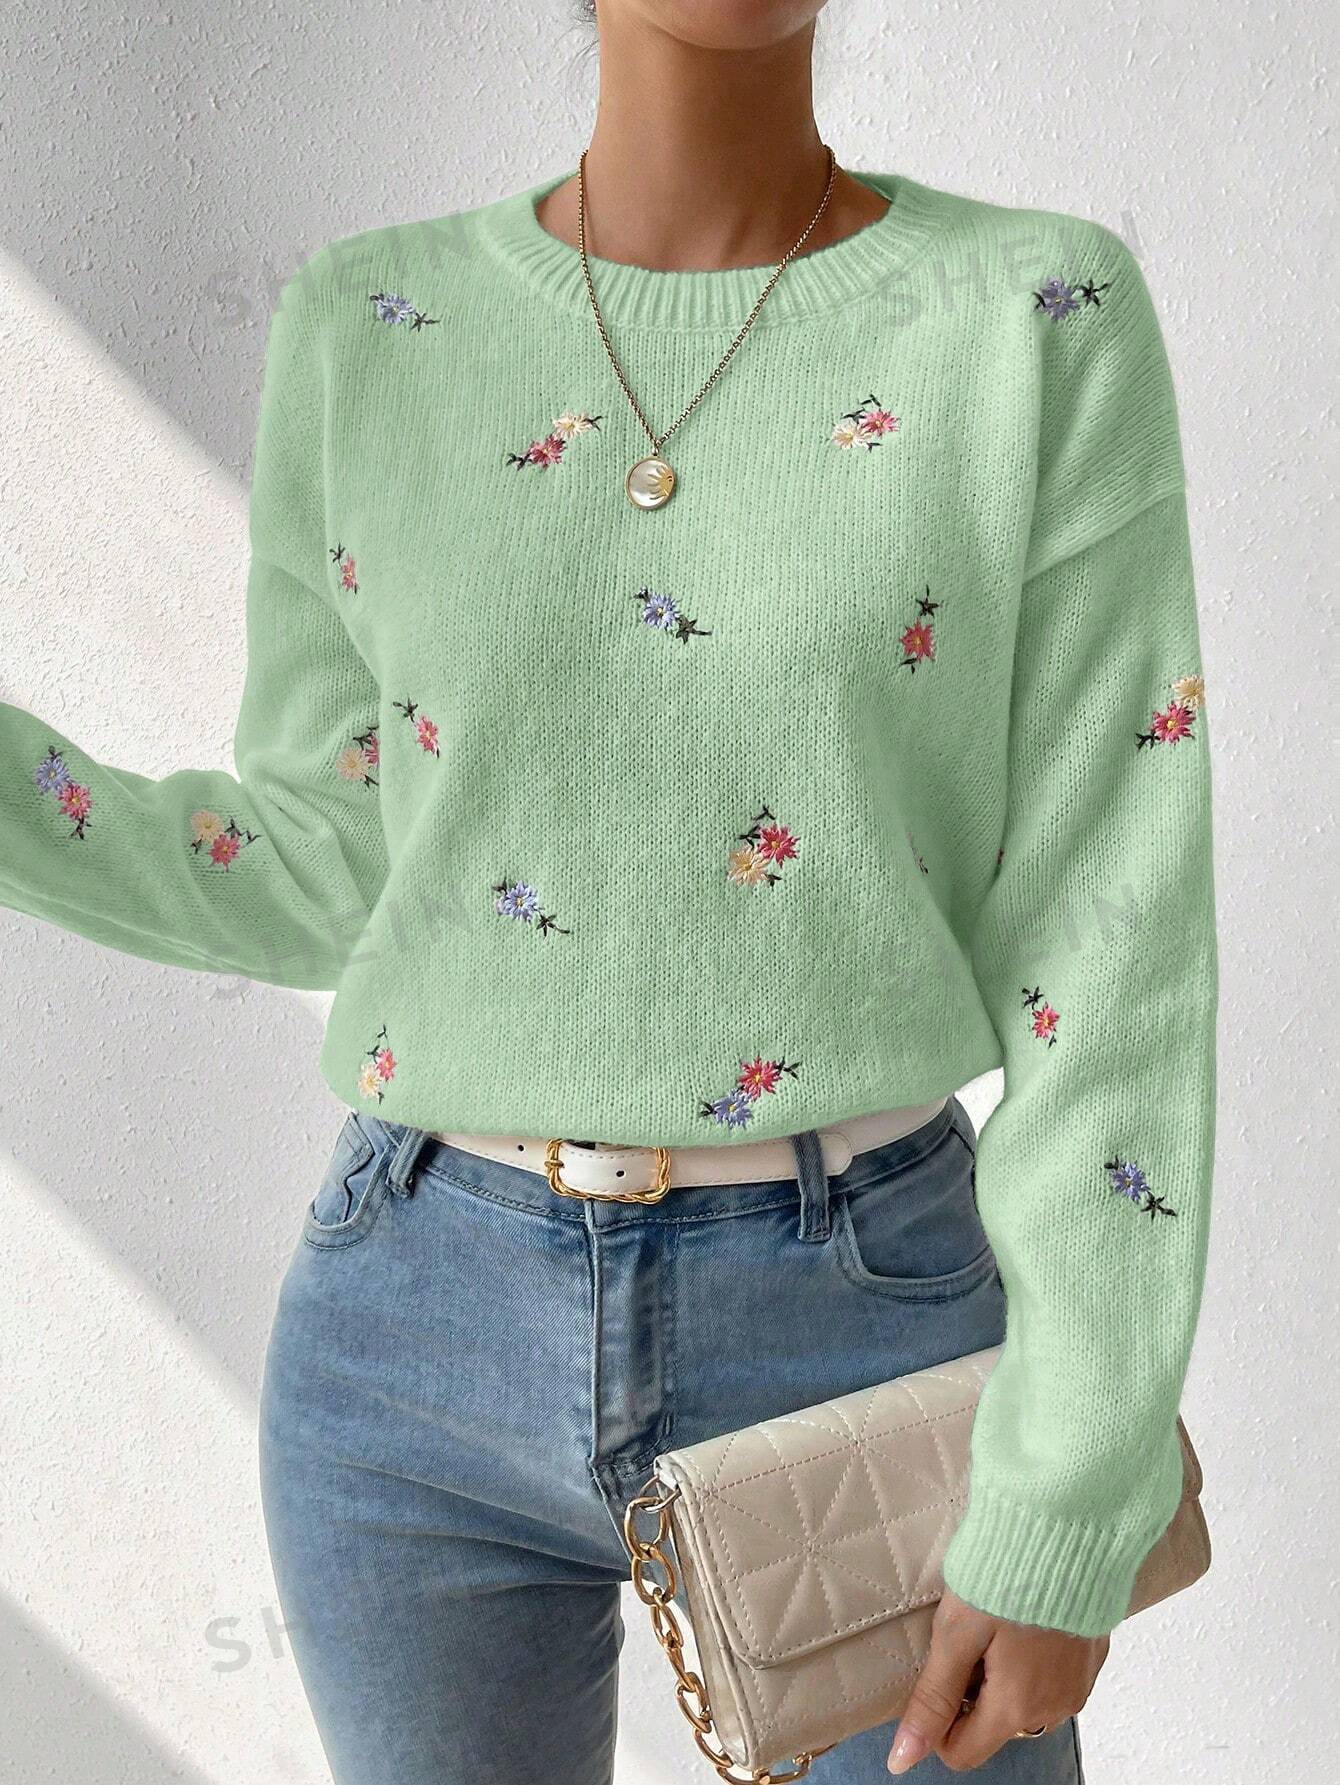 SHEIN Essnce Свитер с круглым вырезом и открытыми плечами с цветочной вышивкой, мятно-зеленый shein essnce однотонный открытый вязаный свитер с заниженными плечами оливково зеленый